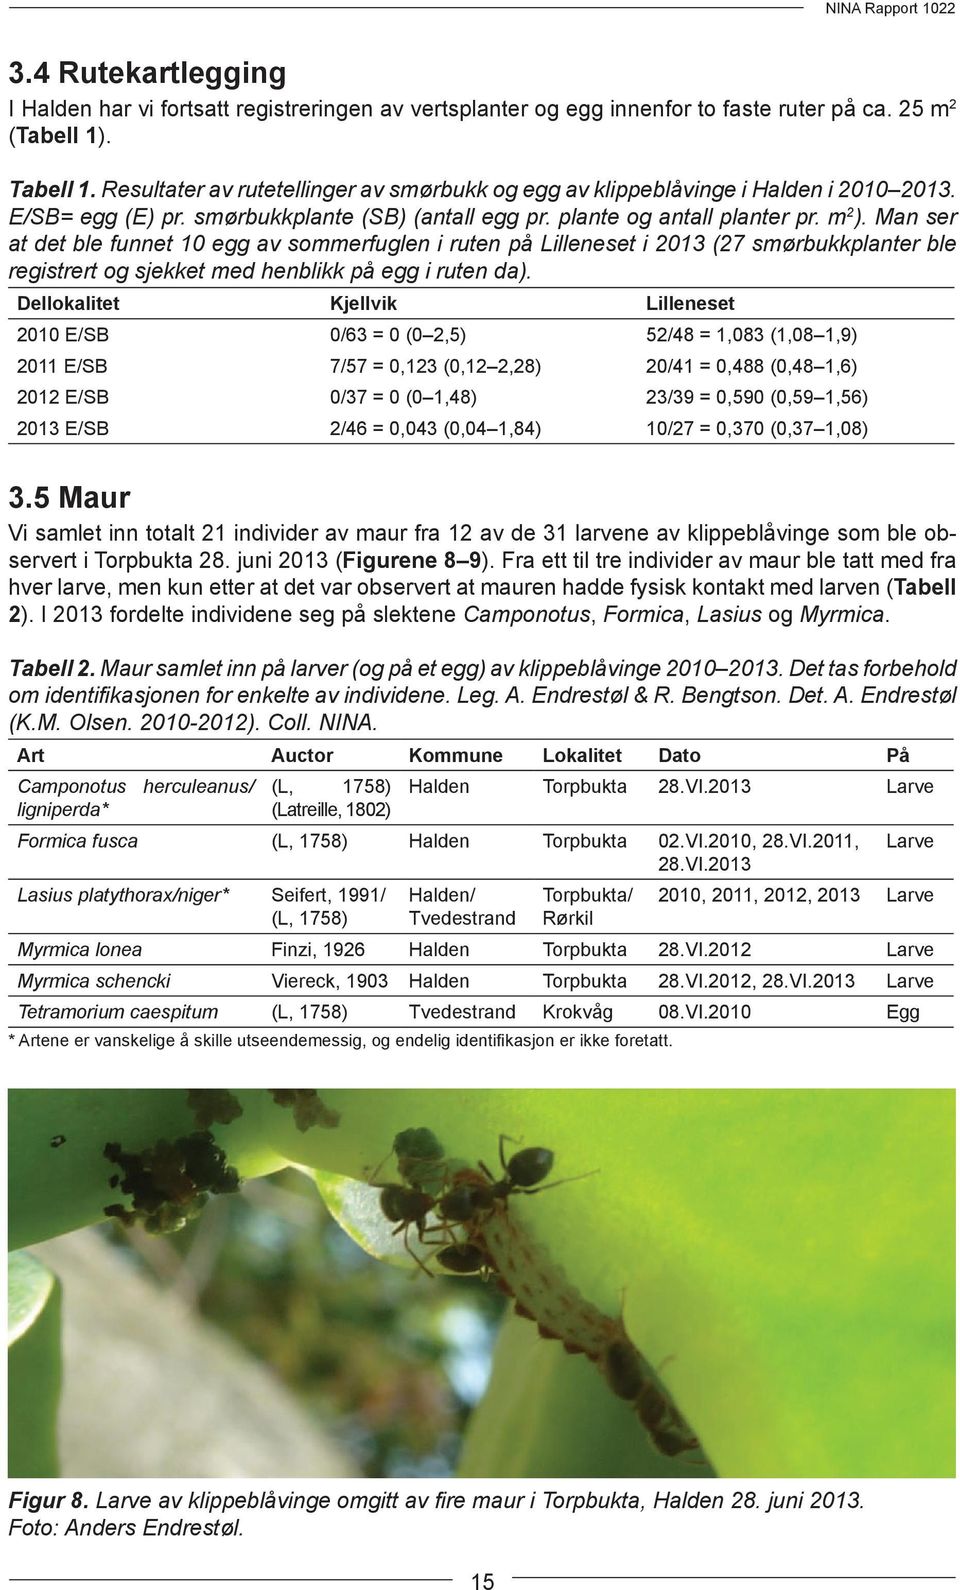 Man ser at det ble funnet 10 egg av sommerfuglen i ruten på Lilleneset i 2013 (27 smørbukkplanter ble registrert og sjekket med henblikk på egg i ruten da).